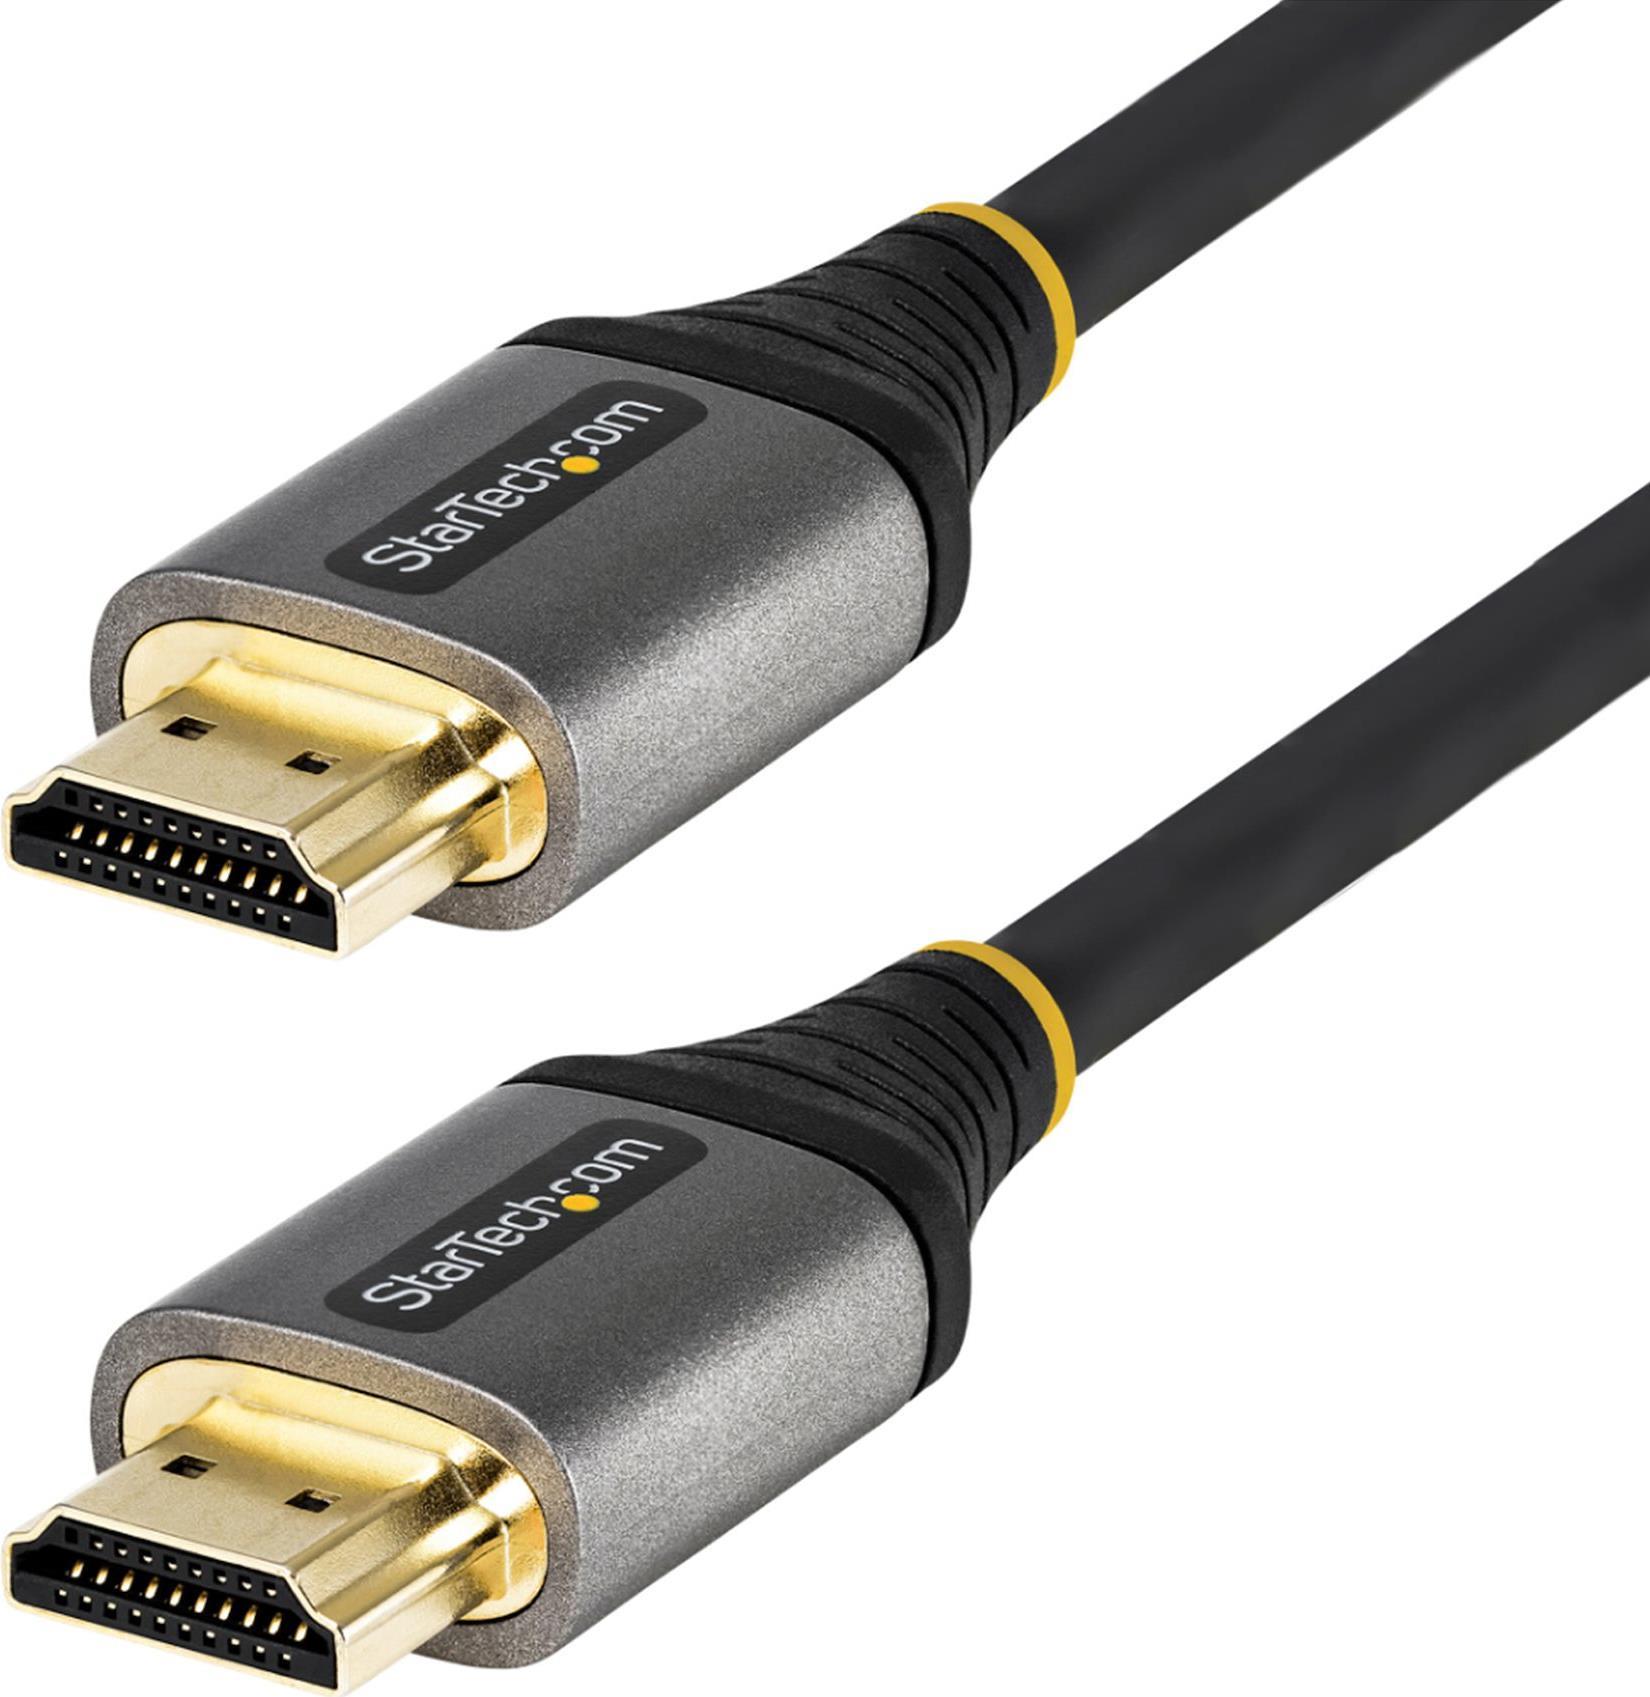 StarTech.com 0,5m Premium High Speed HDMI Kabel mit Ethernet - Ultra HD 4K 60Hz HDMI 2.0 Kabel - HDR10 - ARC - HDMI 2.0 Zertifiziert - Für 4k Bildschirme - UHD HDMI Typ A Vergoldete Stecker (HDMMV50CM)